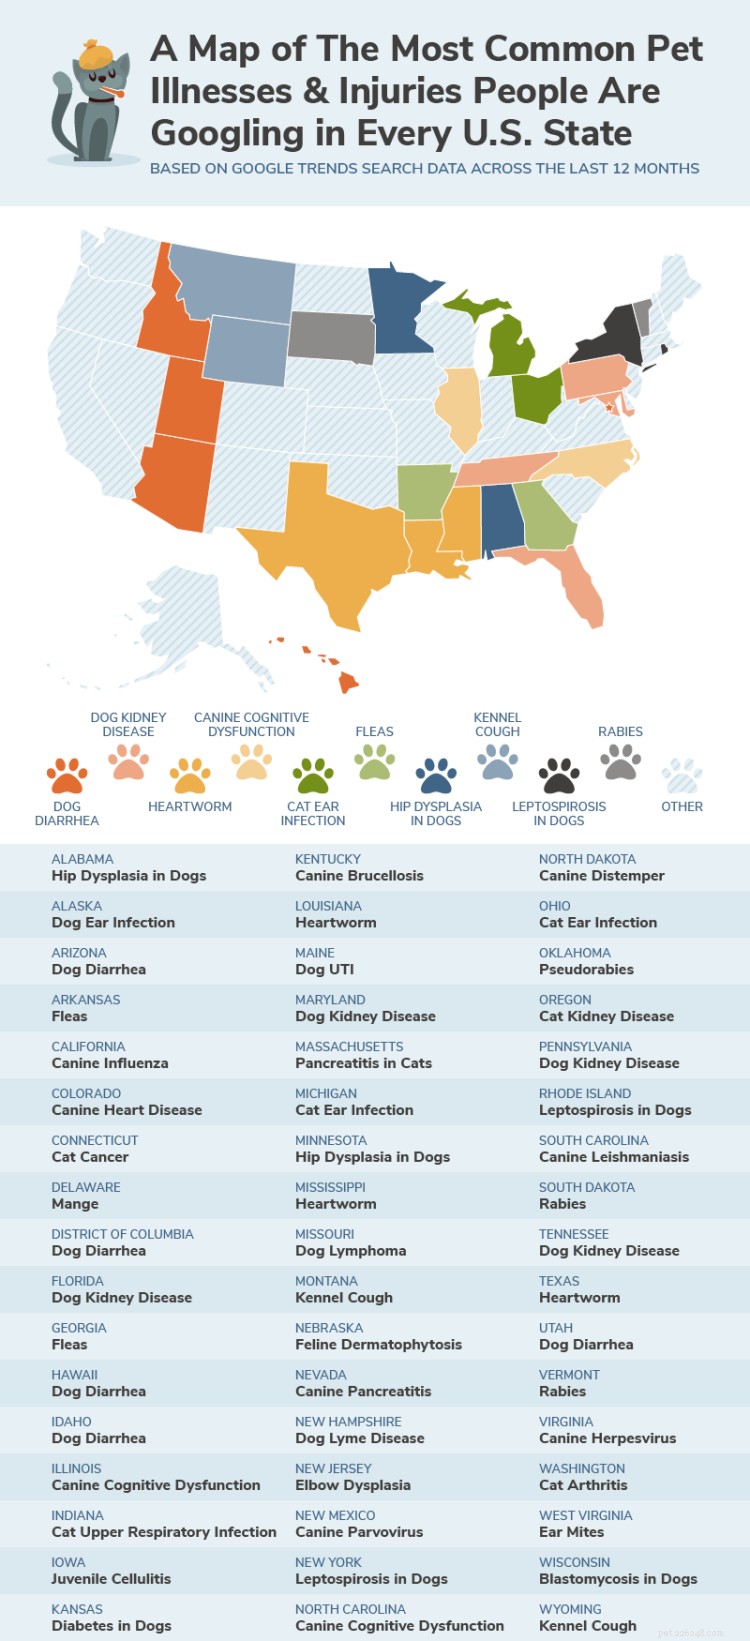 Les maladies et blessures des animaux de compagnie les plus fréquemment recherchées dans chaque État américain d après les tendances de recherche Google